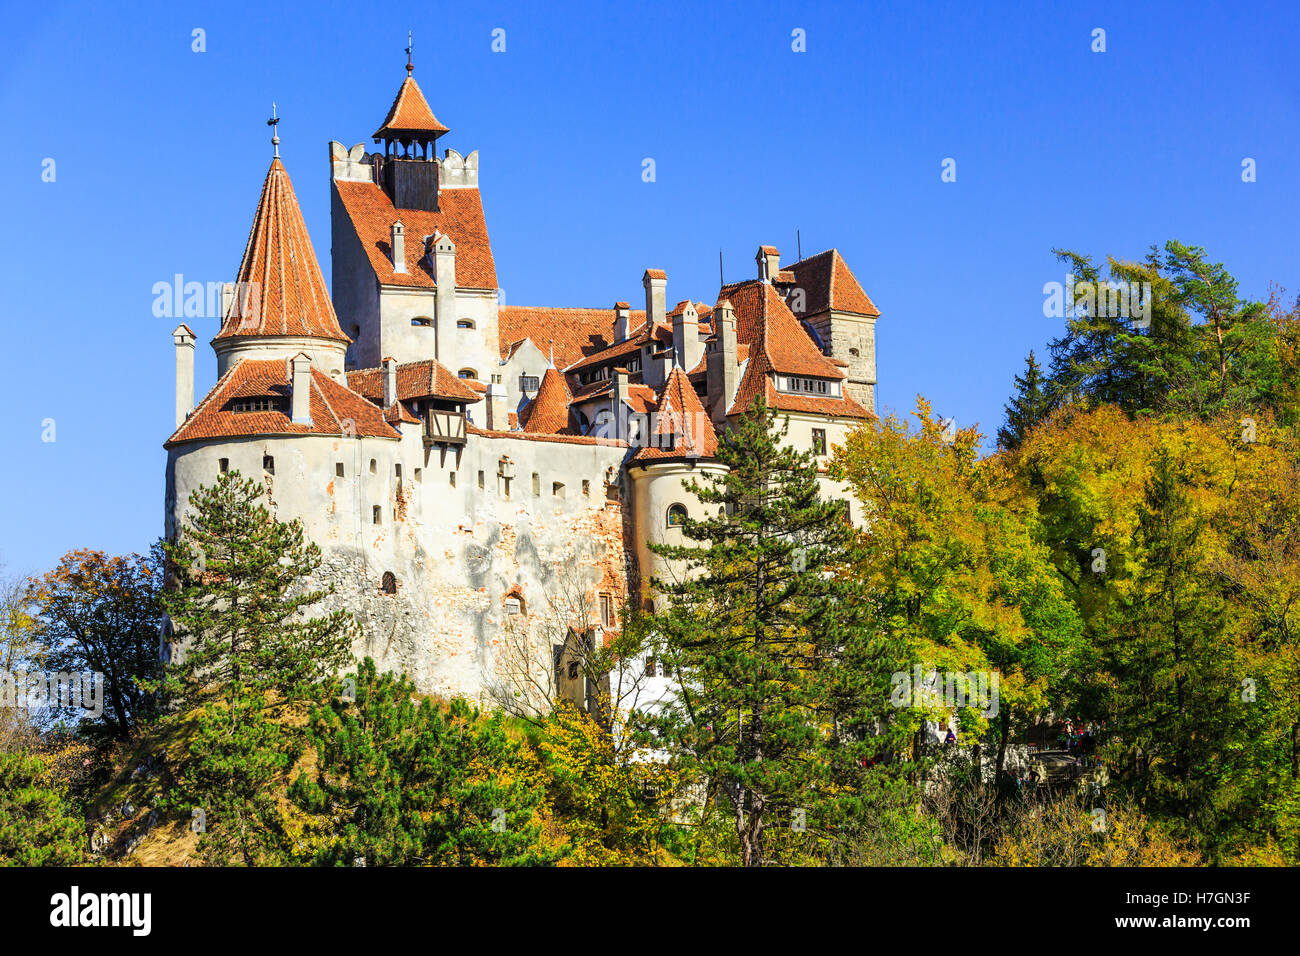 Die mittelalterliche Burg Bran, bekannt für den Mythos von Dracula. Siebenbürgen, Rumänien Stockfoto